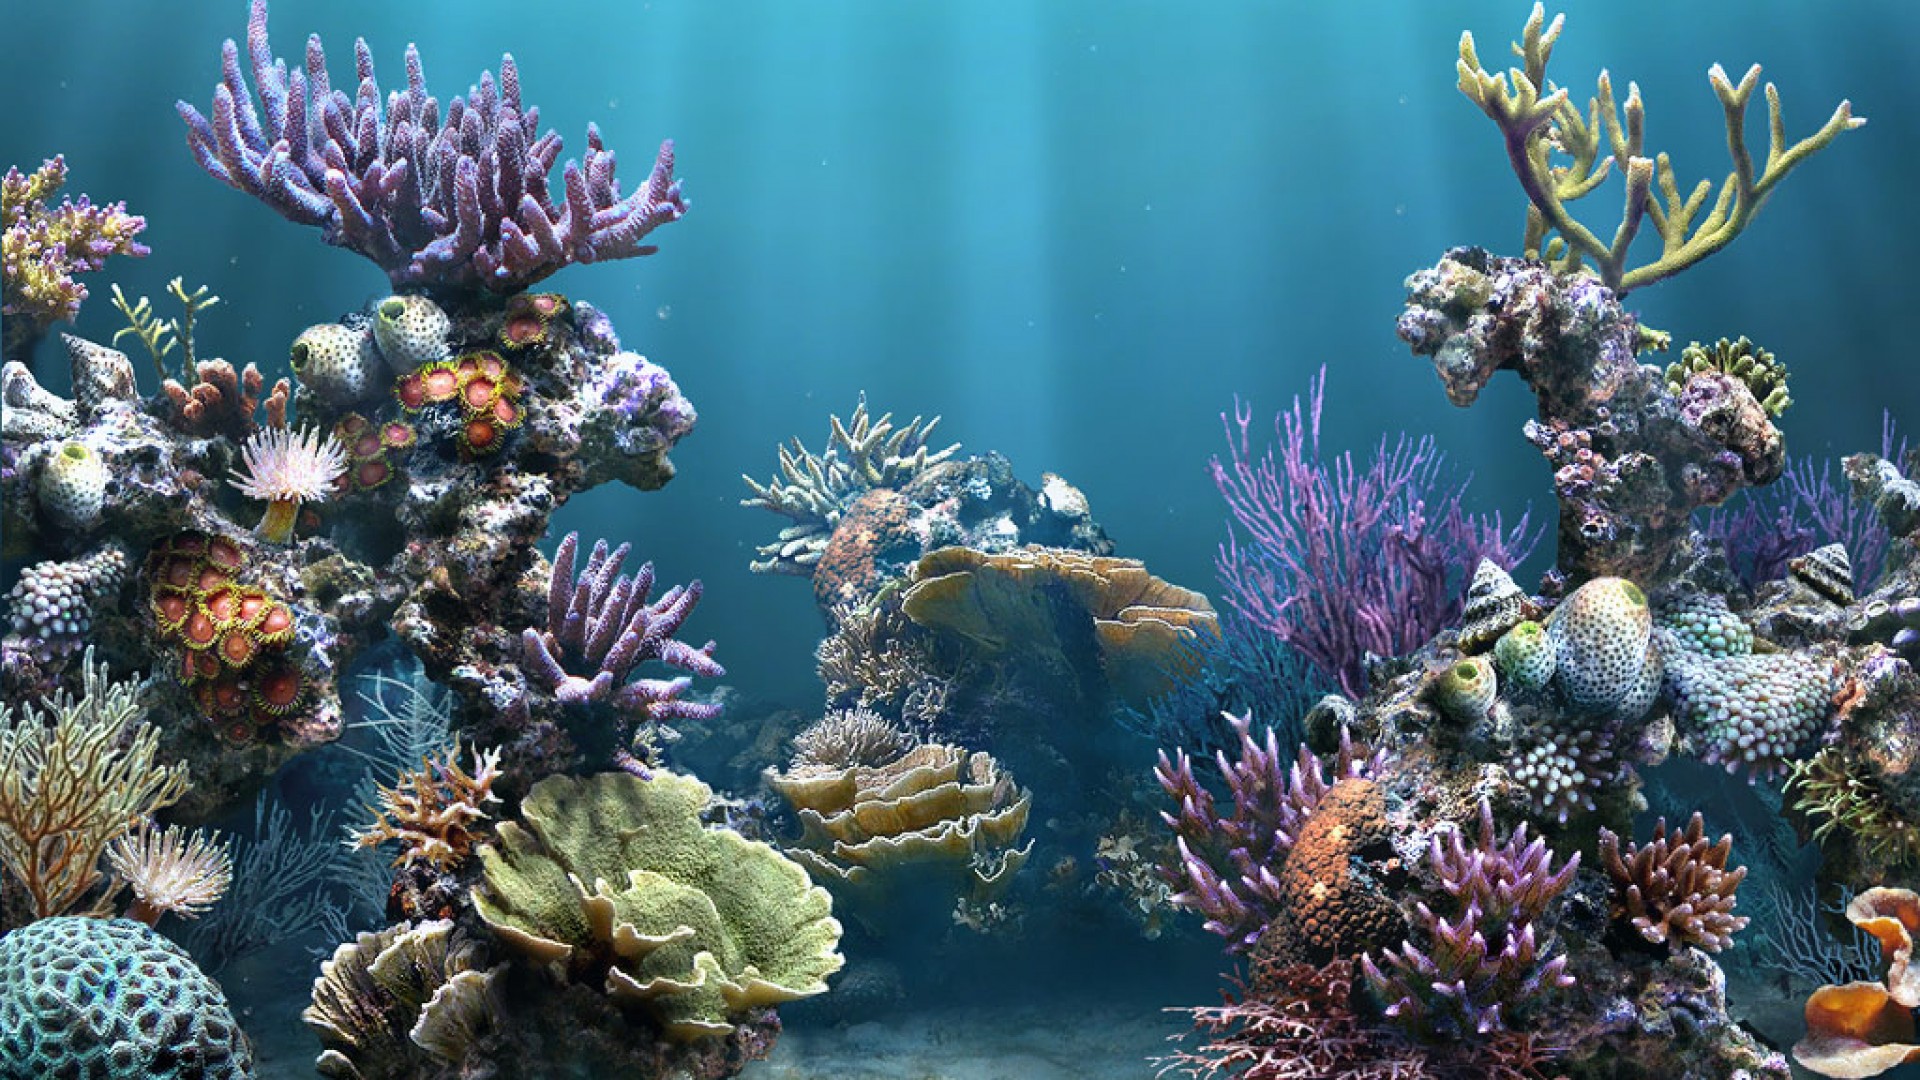 Muốn sở hữu ngay hình nền Aquarium HD miễn phí tải về để trang trí cho màn hình desktop của mình? Bạn hoàn toàn có thể tìm thấy những bức ảnh lung linh và tuyệt đẹp trên internet với độ phân giải cao, đảm bảo sẽ làm hài lòng mọi tín đồ yêu thích cá cảnh.